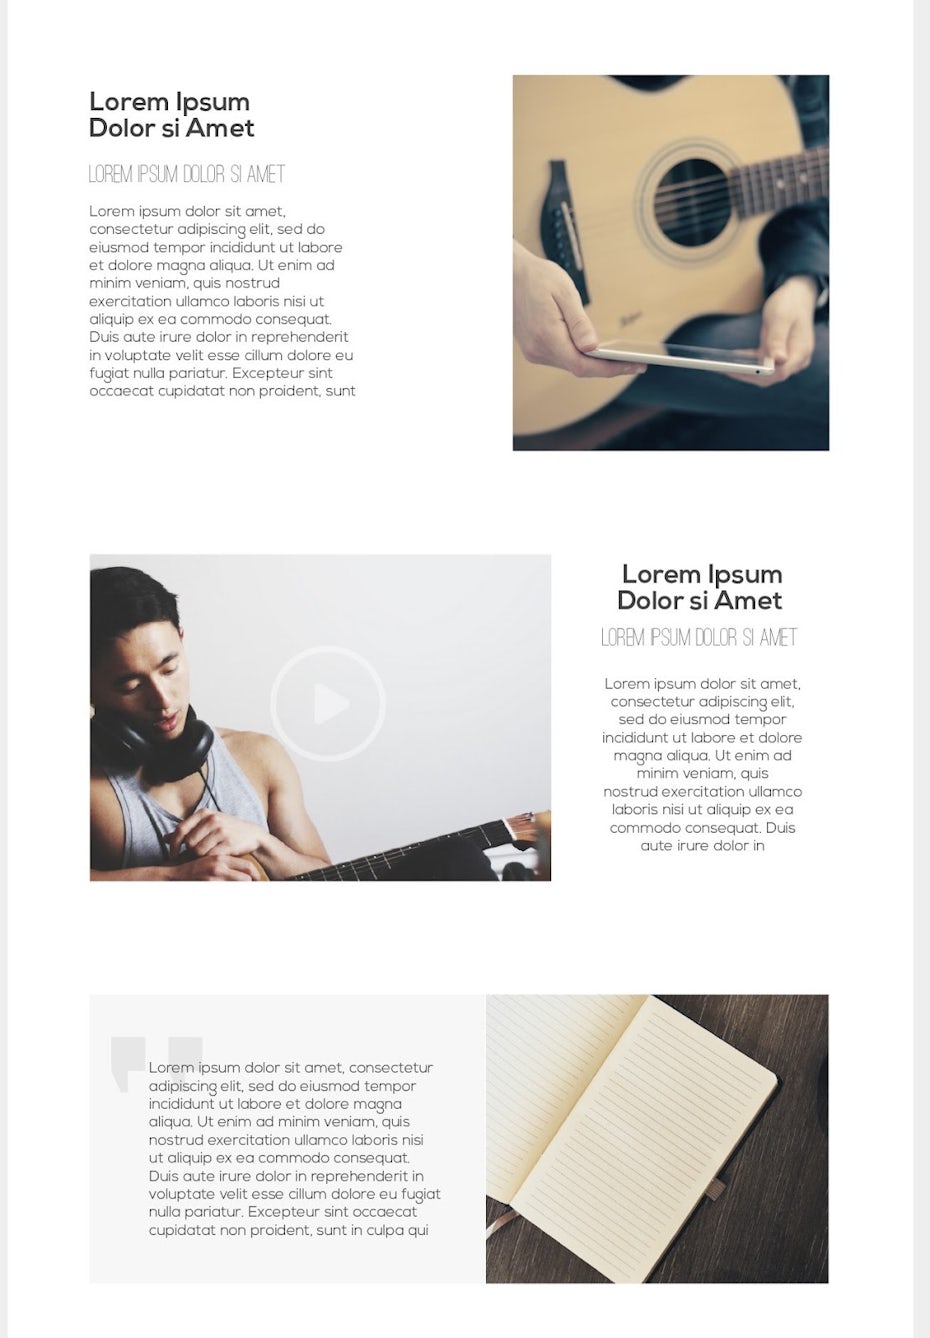 Design d'email avec trois images distinctes d'une guitare, d'un homme portant des écouteurs tout en tenant une guitare et d'un cahier ouvert